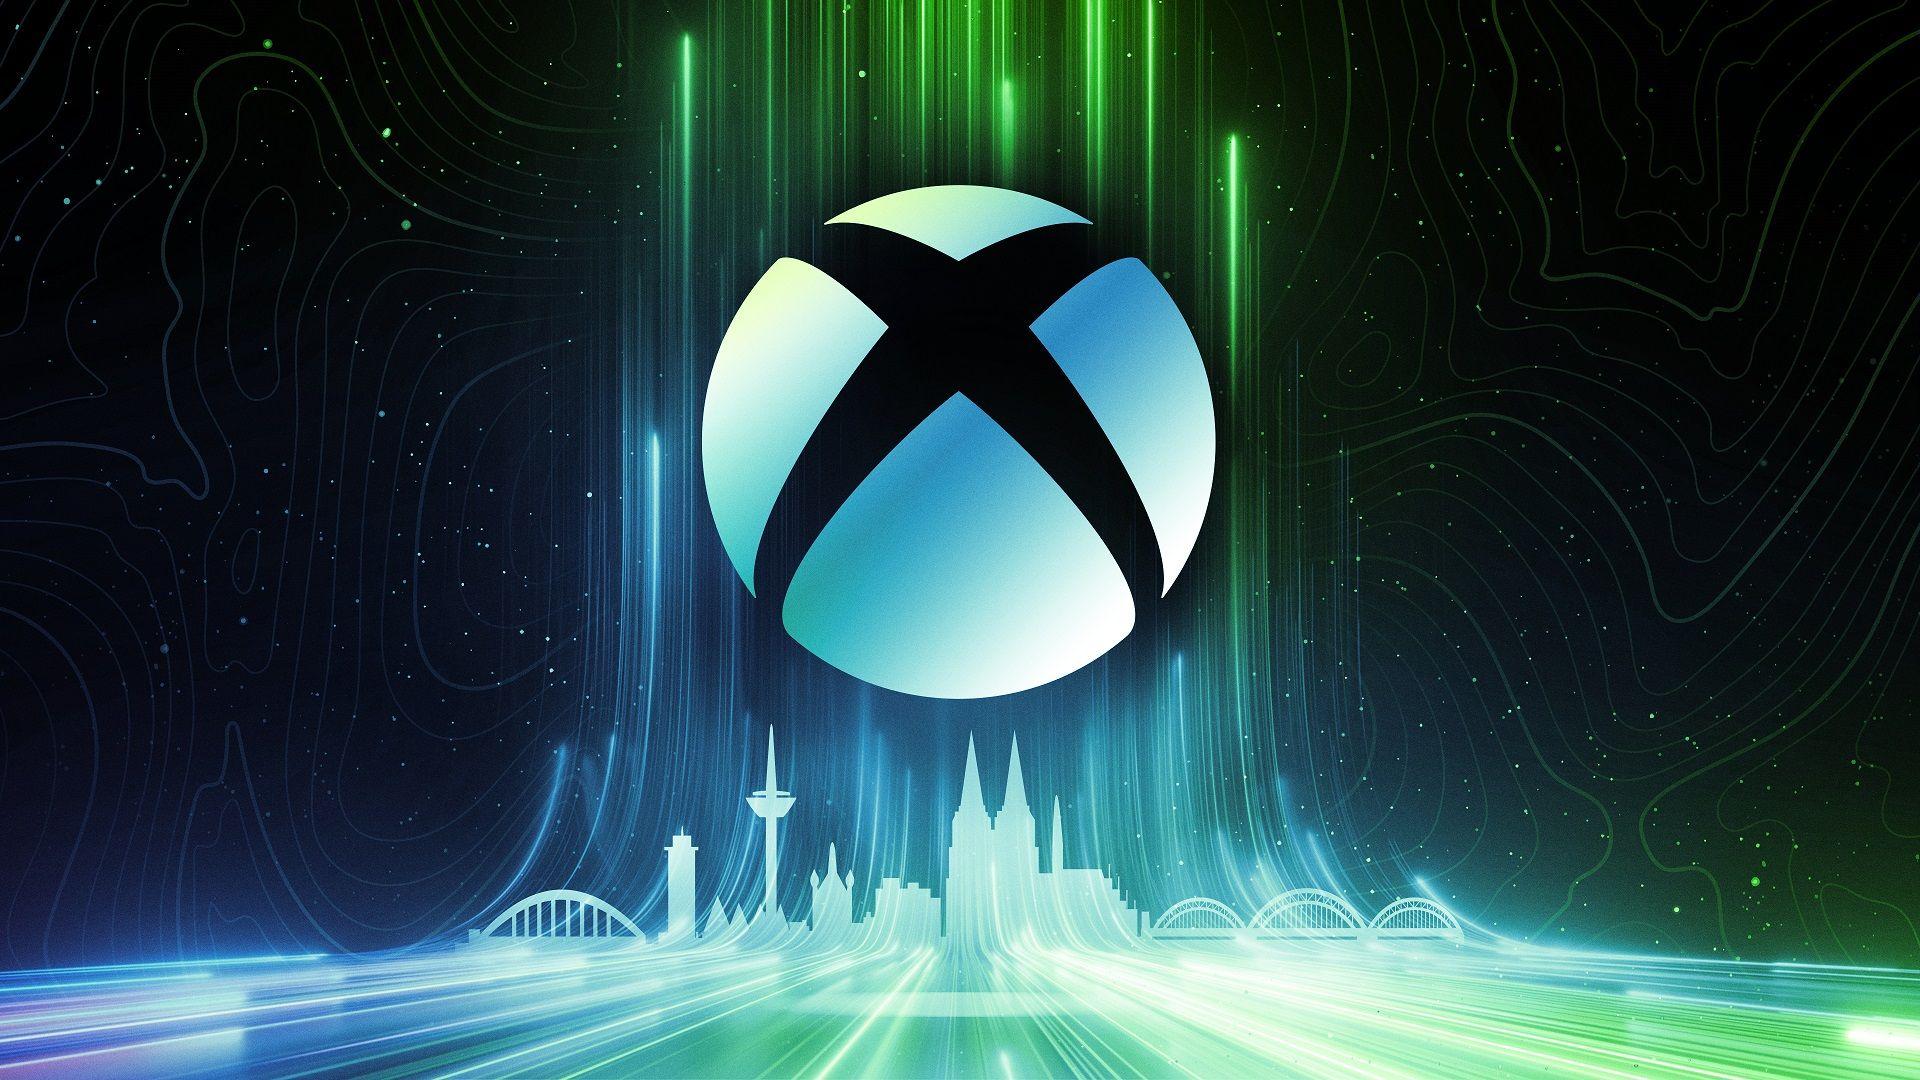 La consola portátil Xbox es un dispositivo de la familia Xbox que podría anunciarse muy pronto